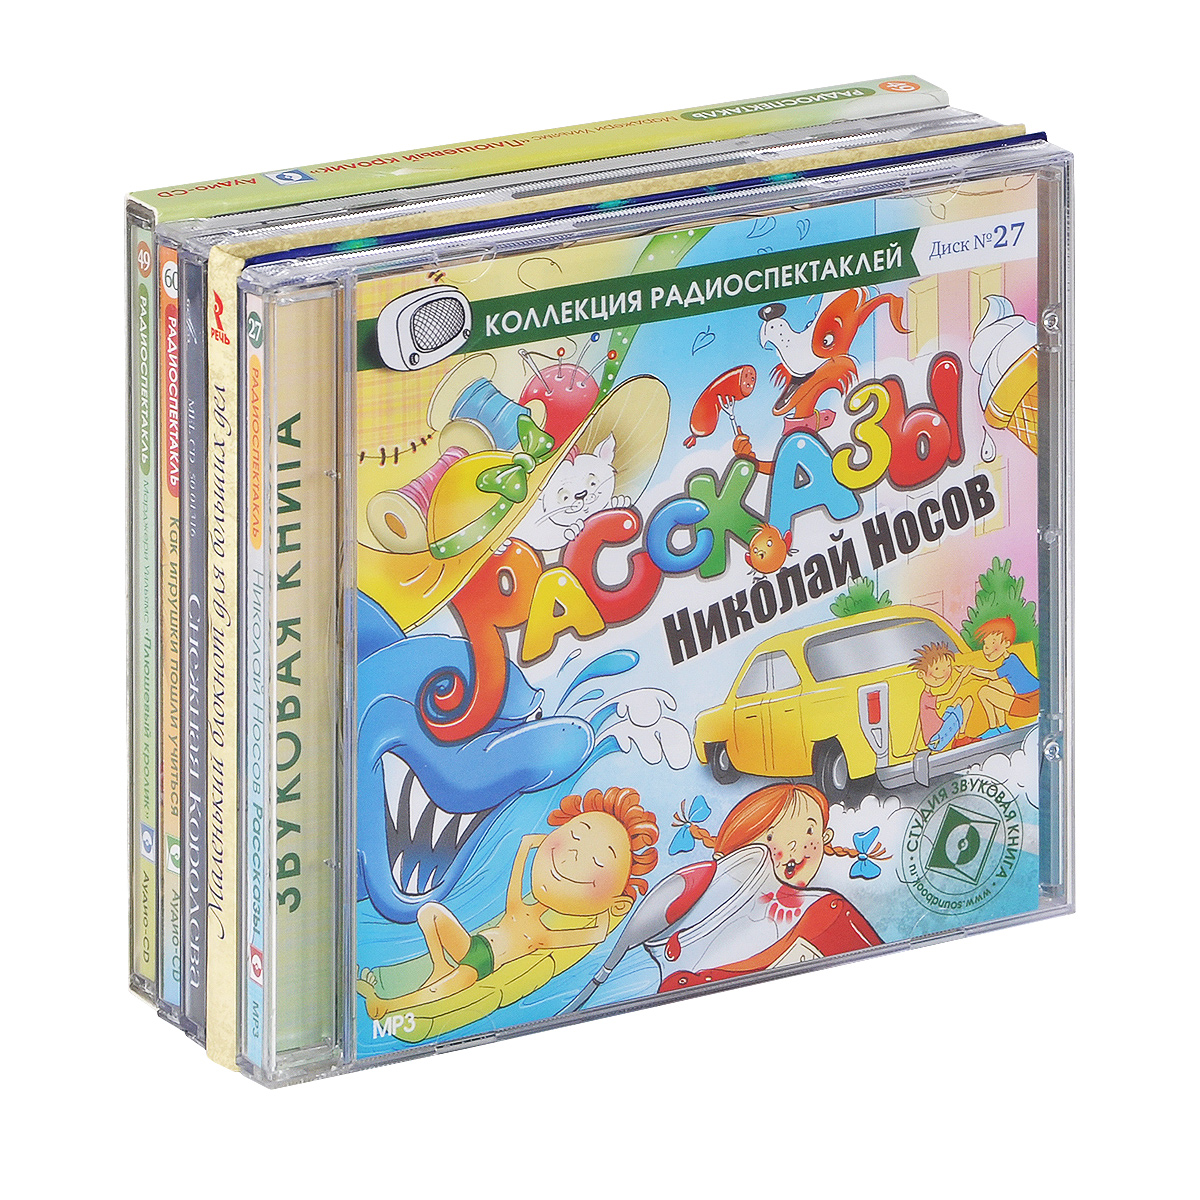 Сказки для детей 5-8 лет (комплект из 4 аудиокниг CD + блокнот)